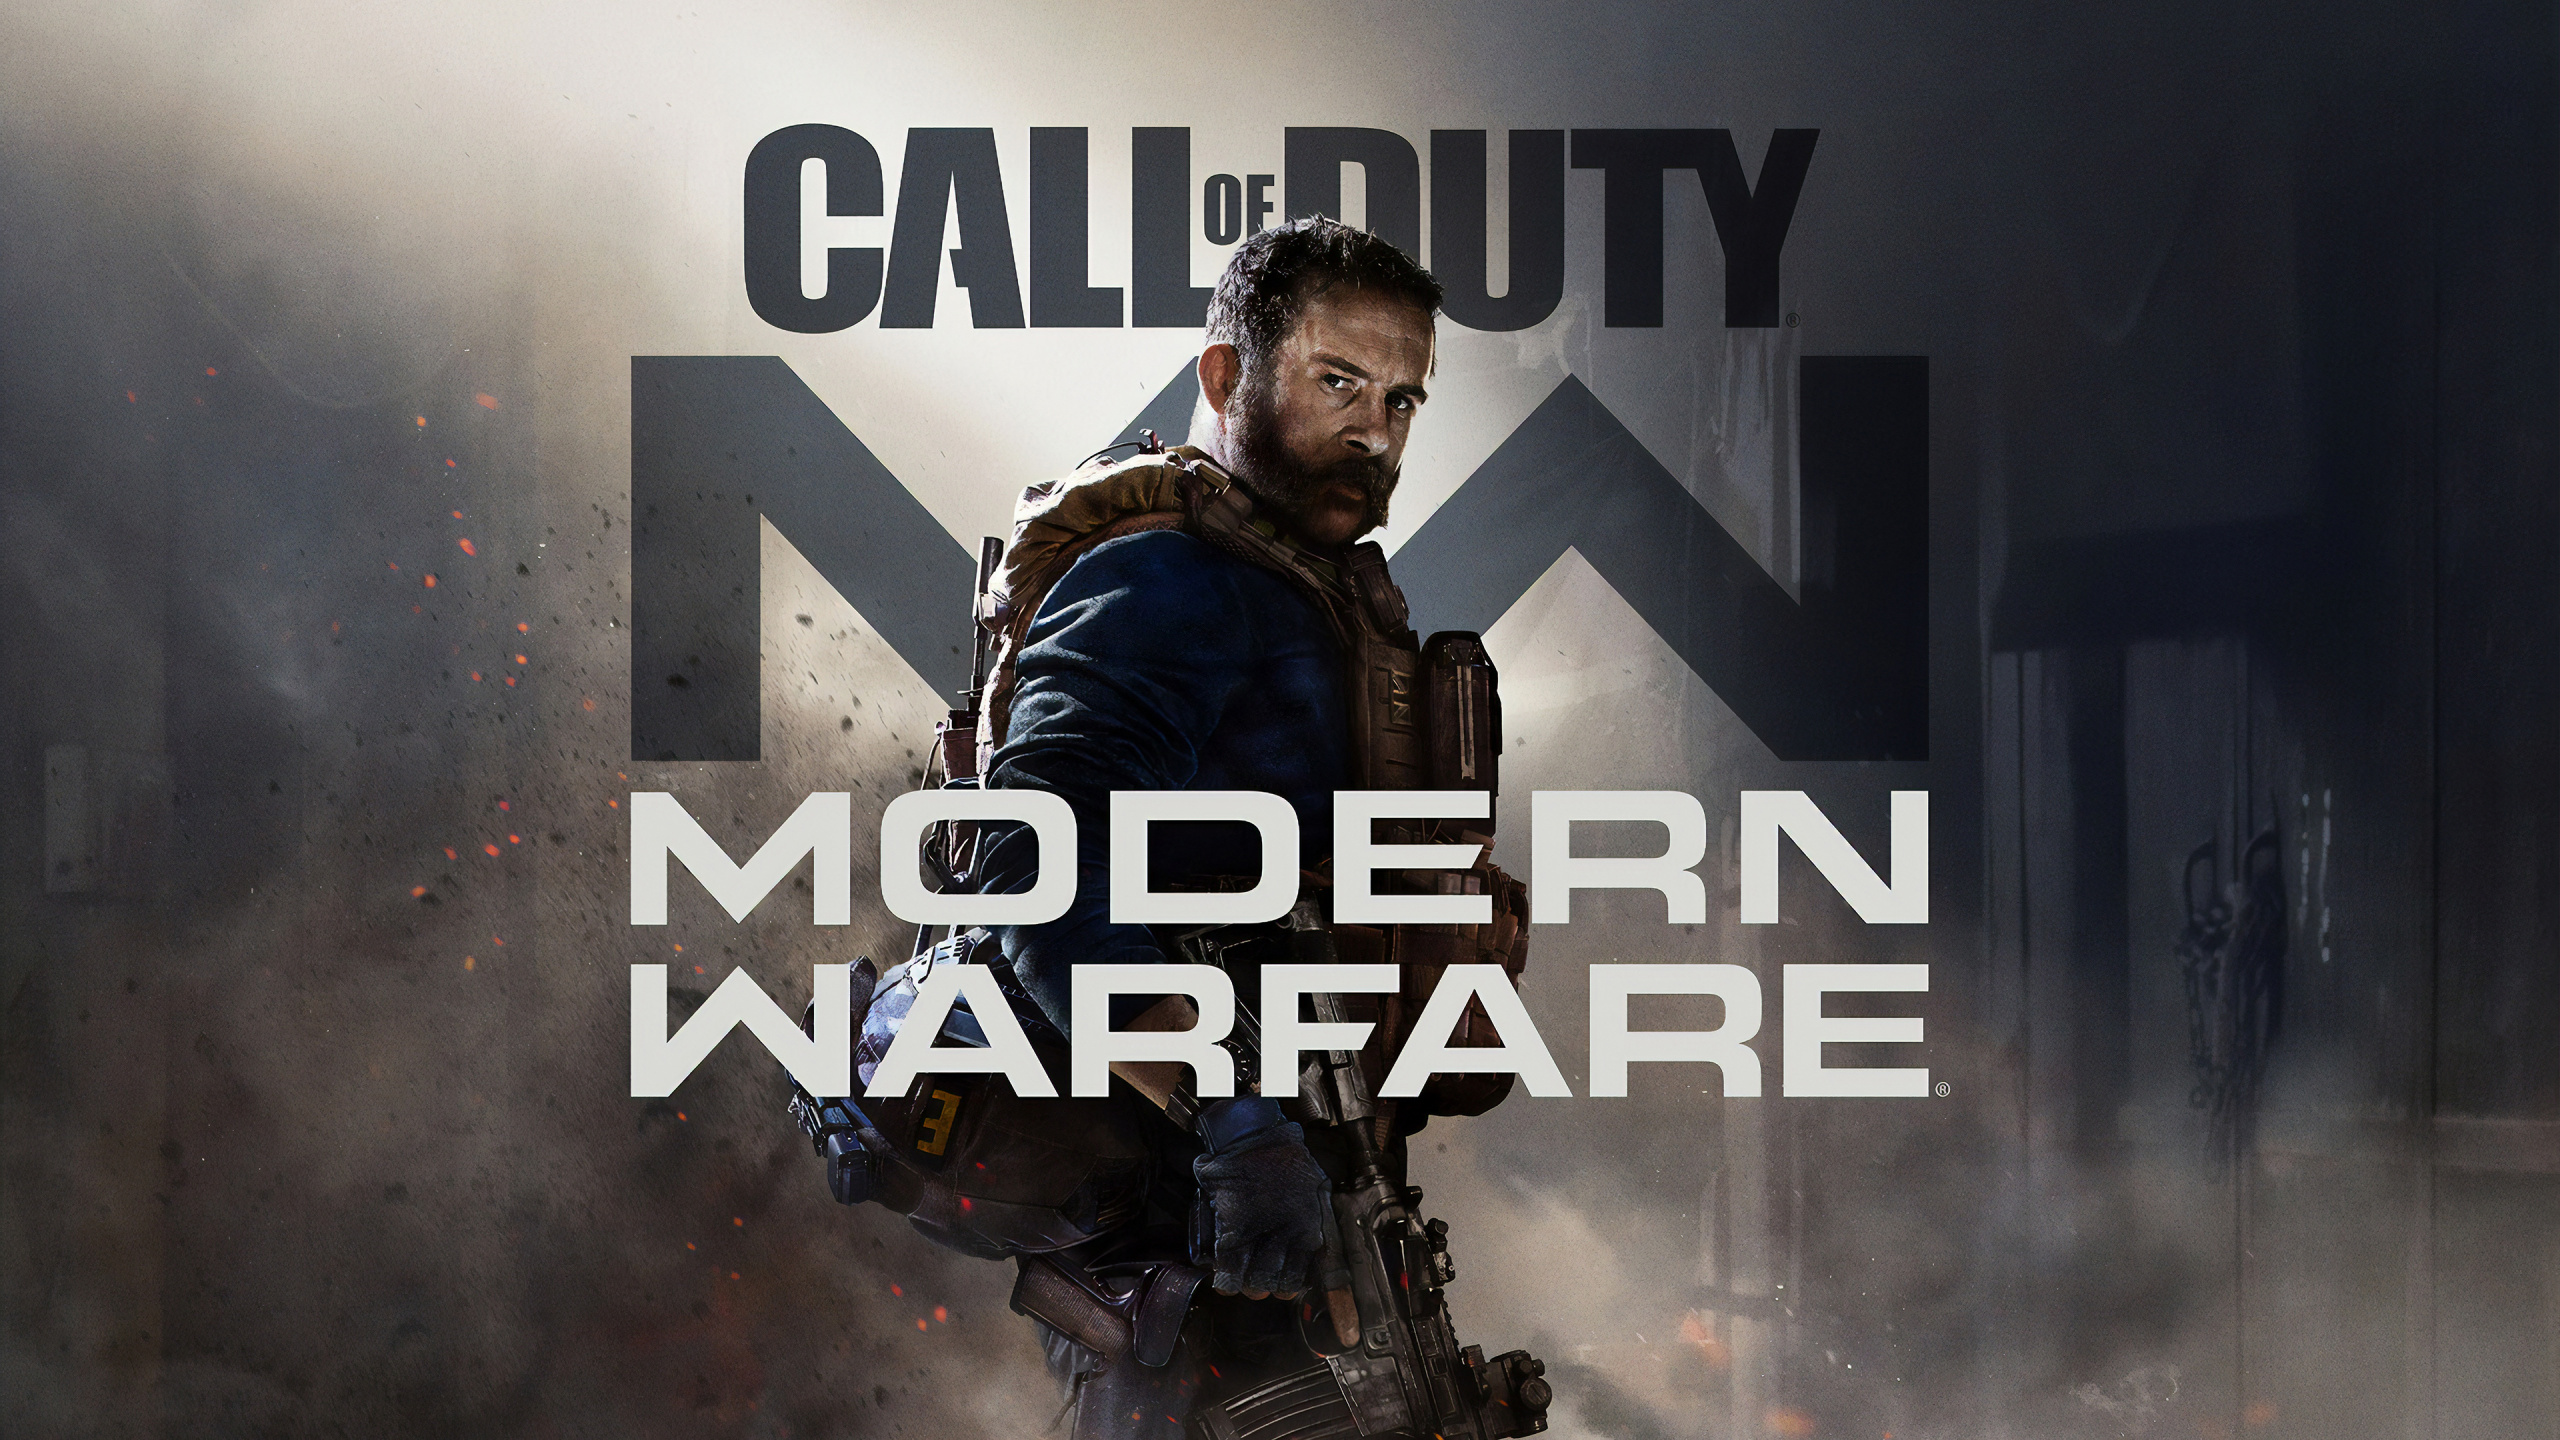 Call of Duty Modern Warfare, Call of Duty 4-modern Warfare, Movie, Pc-Spiel, Shooter-Spiel. Wallpaper in 2560x1440 Resolution